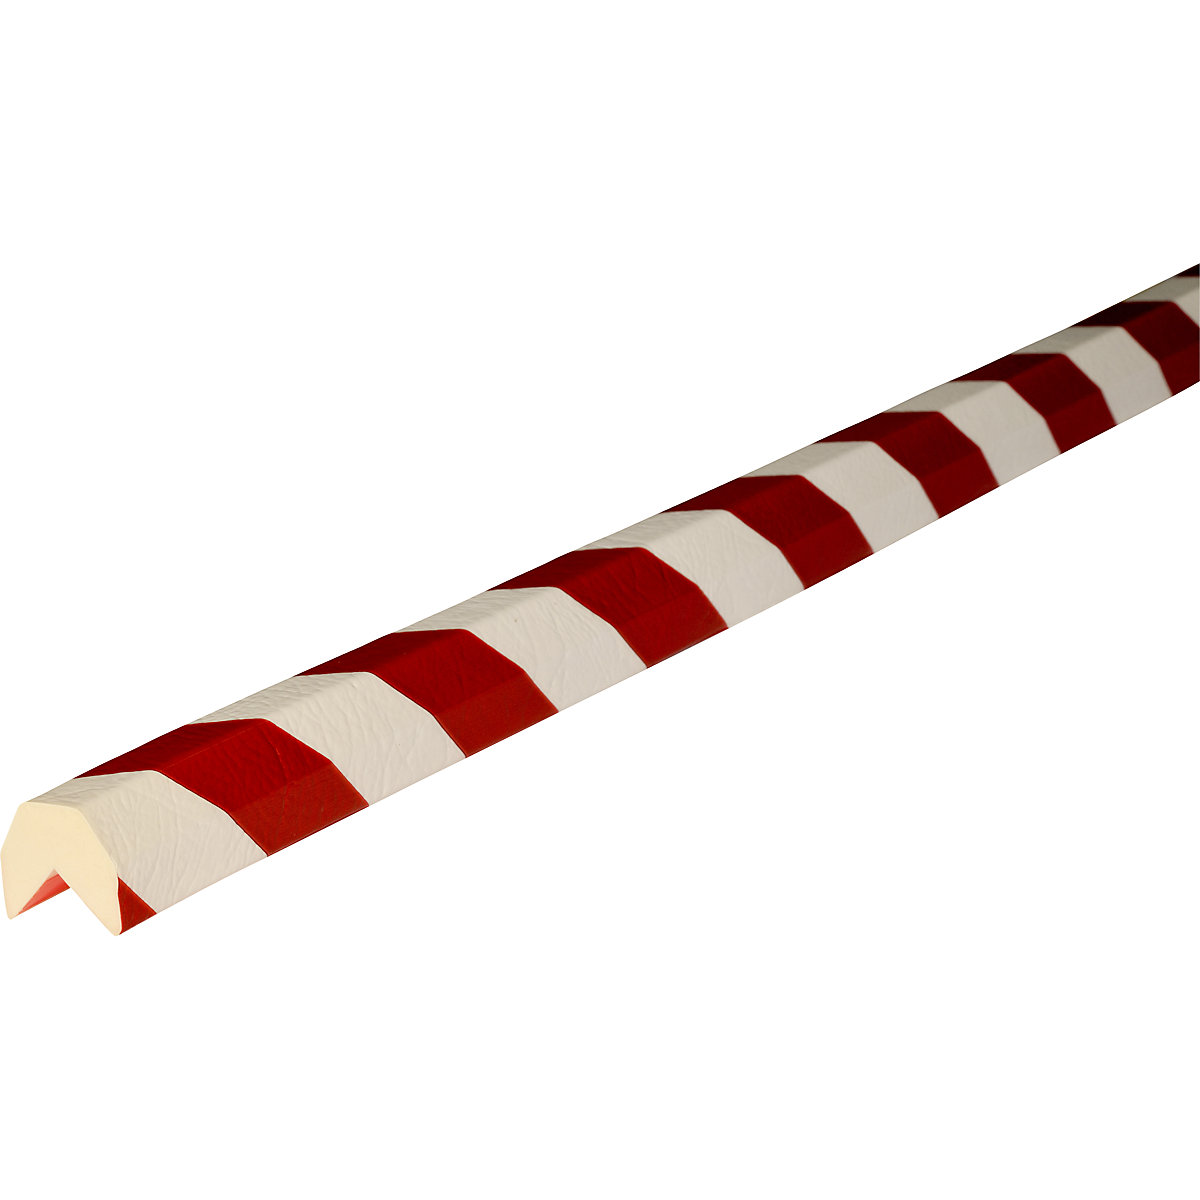 Knuffi®-hoekbescherming – SHG, type AA, stuk van 1 m, rood/wit-11